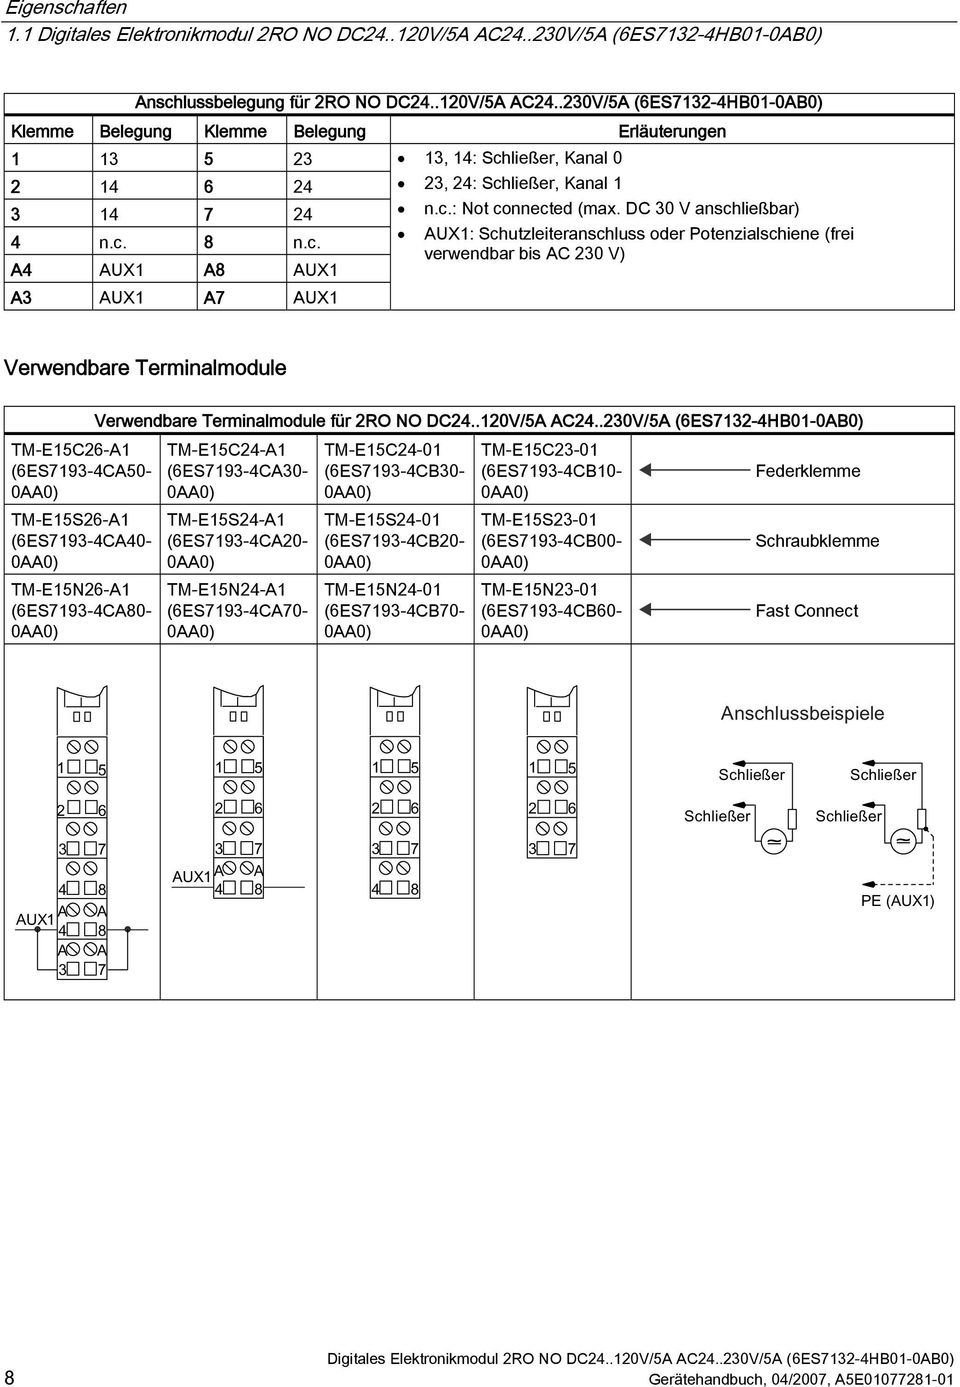 DC 30 V anschließbar) AUX1: Schutzleiteranschluss oder Potenzialschiene (frei verwendbar bis AC 230 V) Verwendbare Terminalmodule TM-E15C26-A1 (6ES7193-4CA50- TM-E15S26-A1 (6ES7193-4CA40-